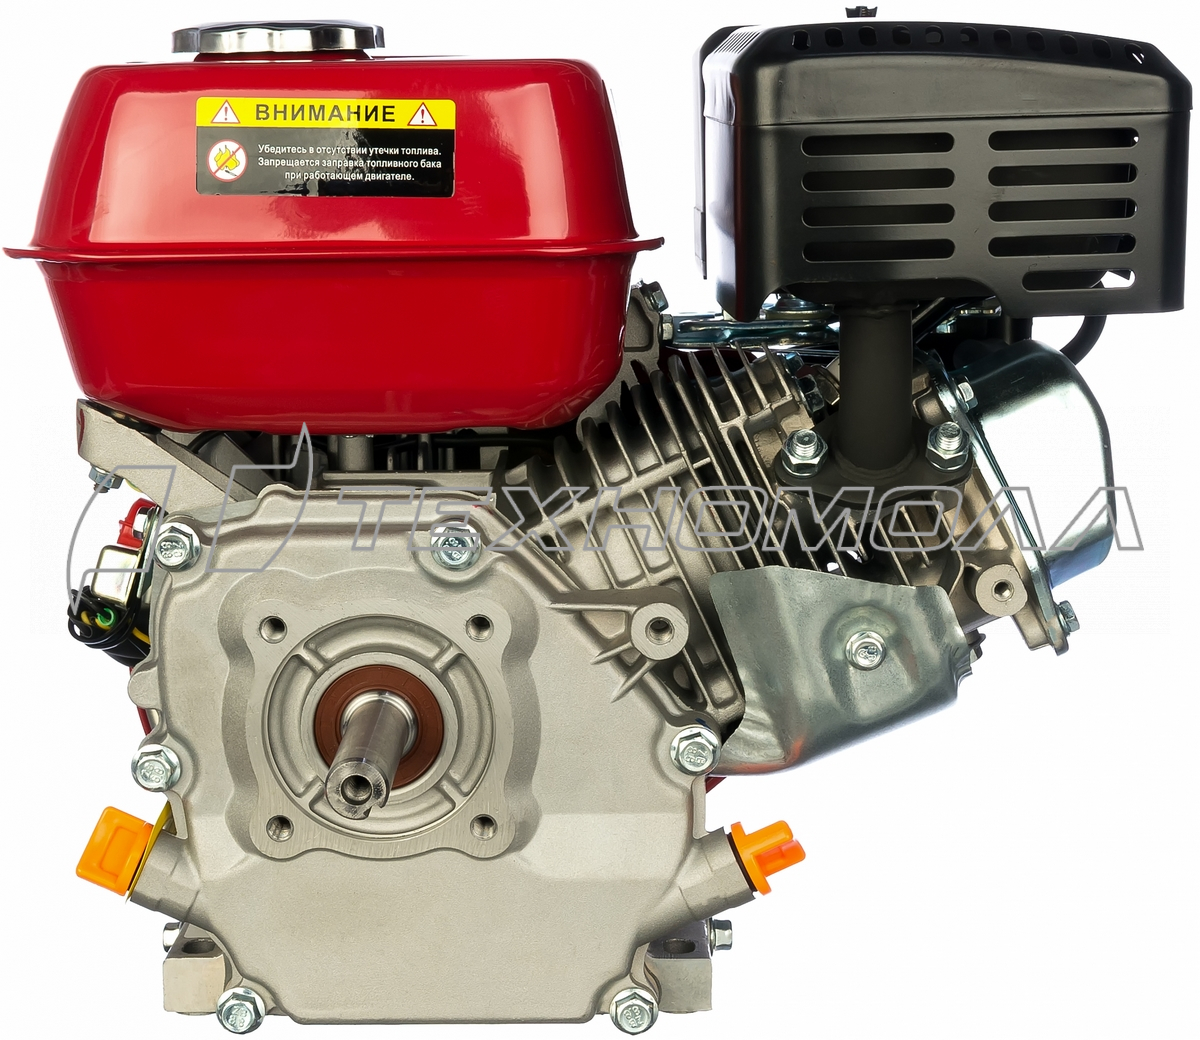 Двигатель (6.5 л.с.) Elitech ДБ200/К6.5